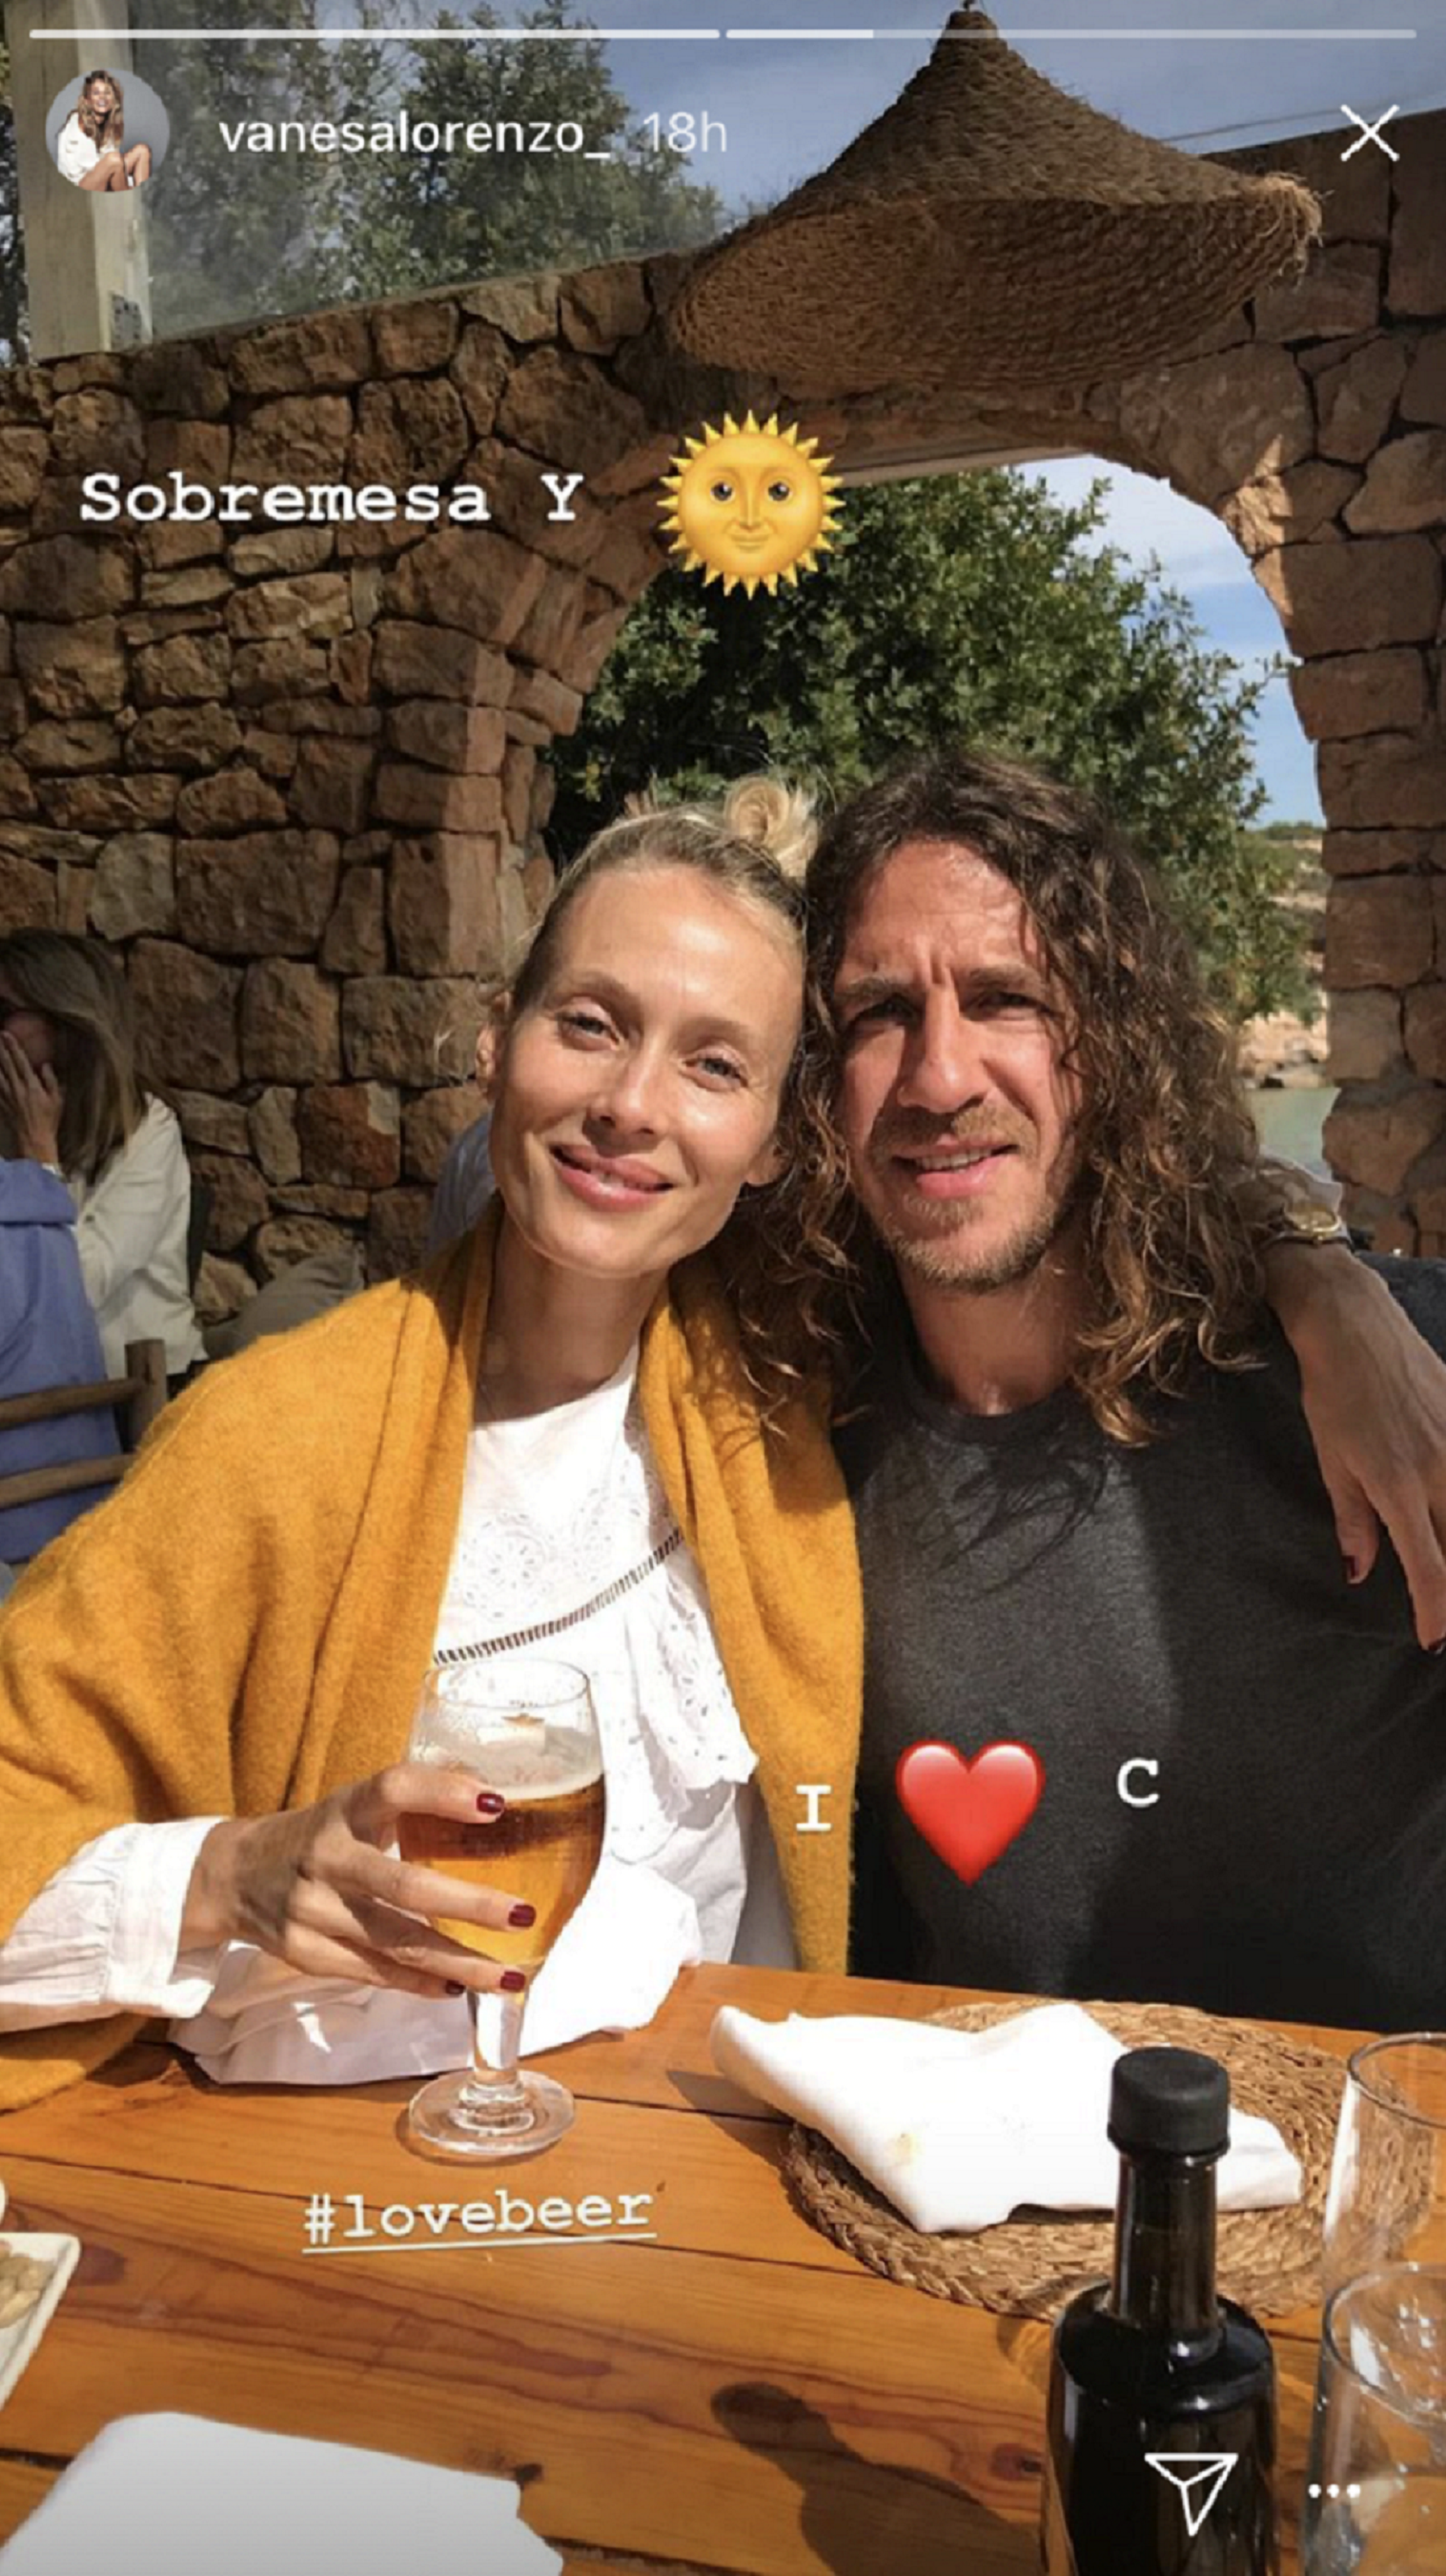 La sospechosa foto de Carles Puyol y Vanesa Lorenzo que hace pensar en boda